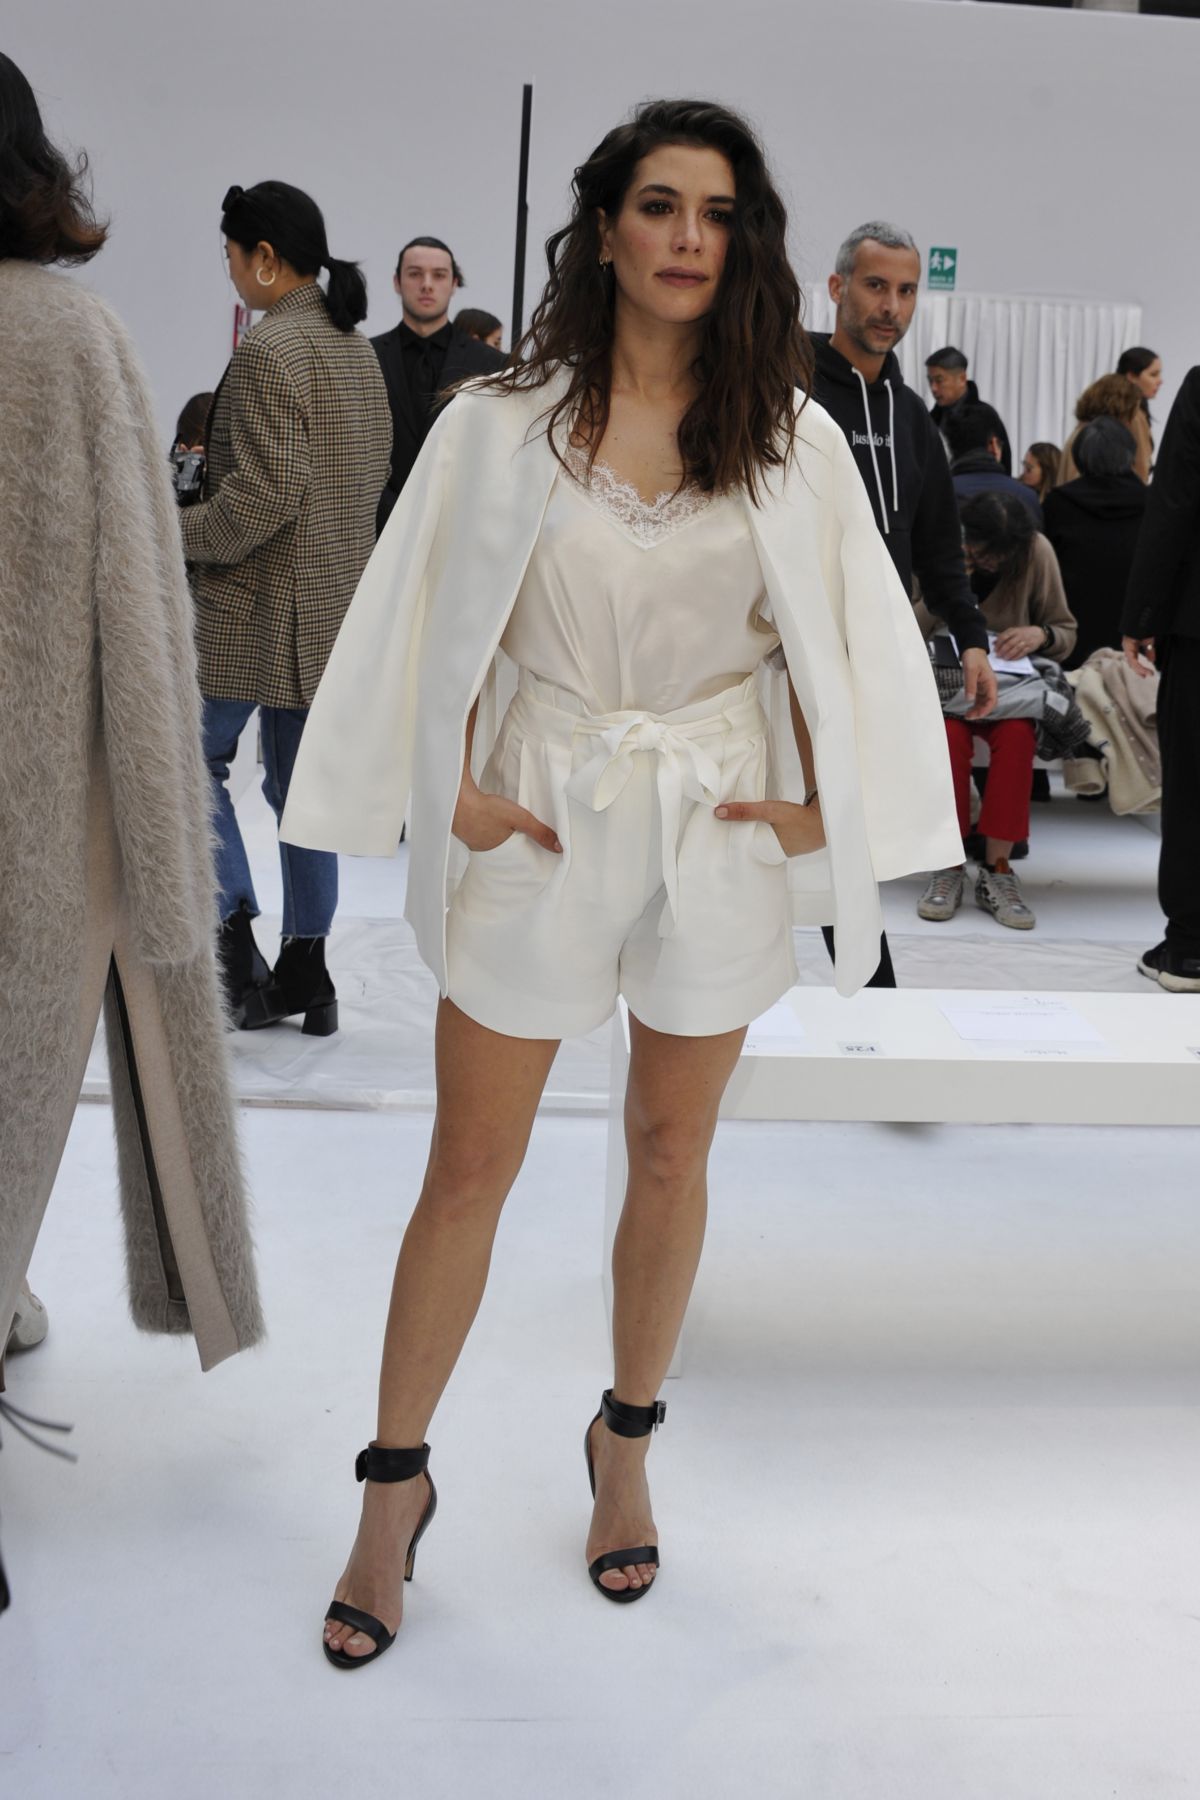 GIULIA MICHELINI at Max Mara Show at Milan Fashion Week 02/20/2020 ...